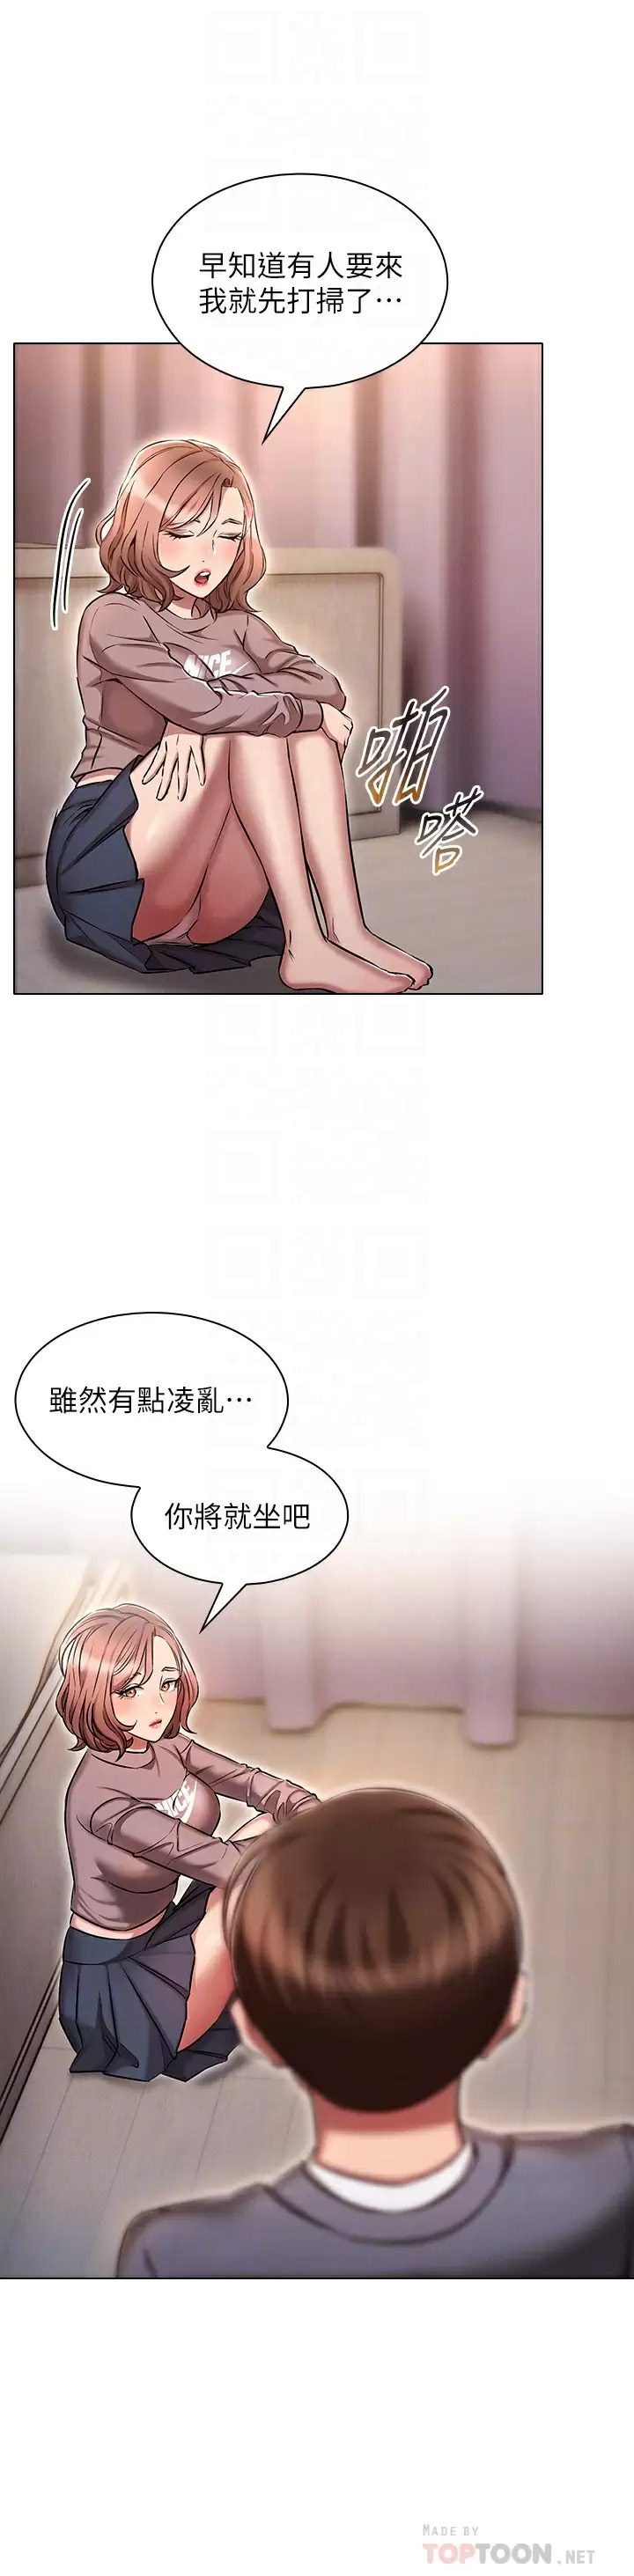 韩国污漫画 魯蛇的多重宇宙 第13话 满溢的暧昧情欲 16